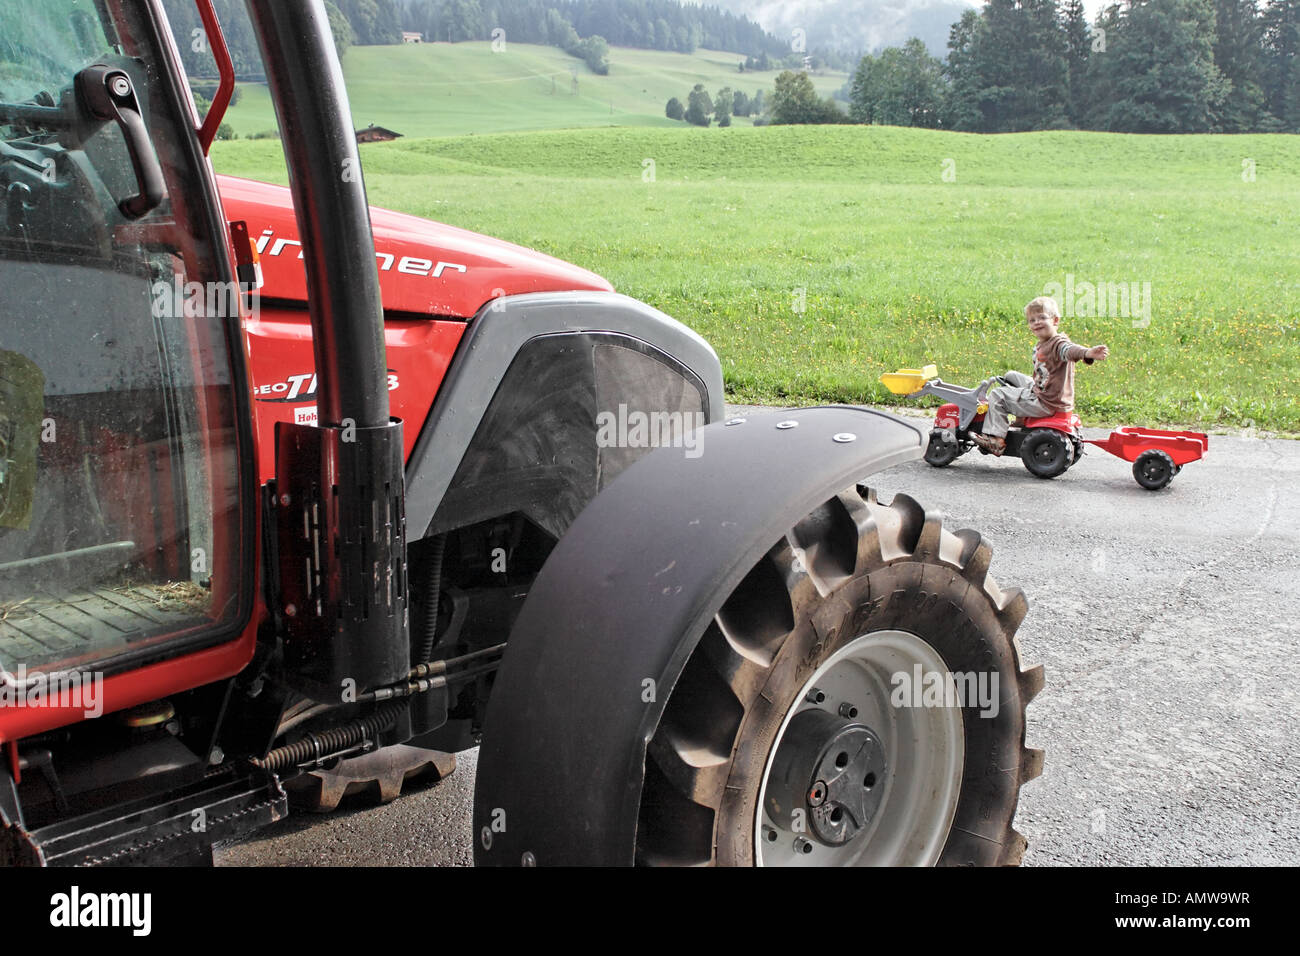 Et grand tracteur tracteur - jouet enfant le jeune enfant jouet de pédalage d'un grand passé tracteur tracteur agricole. Banque D'Images